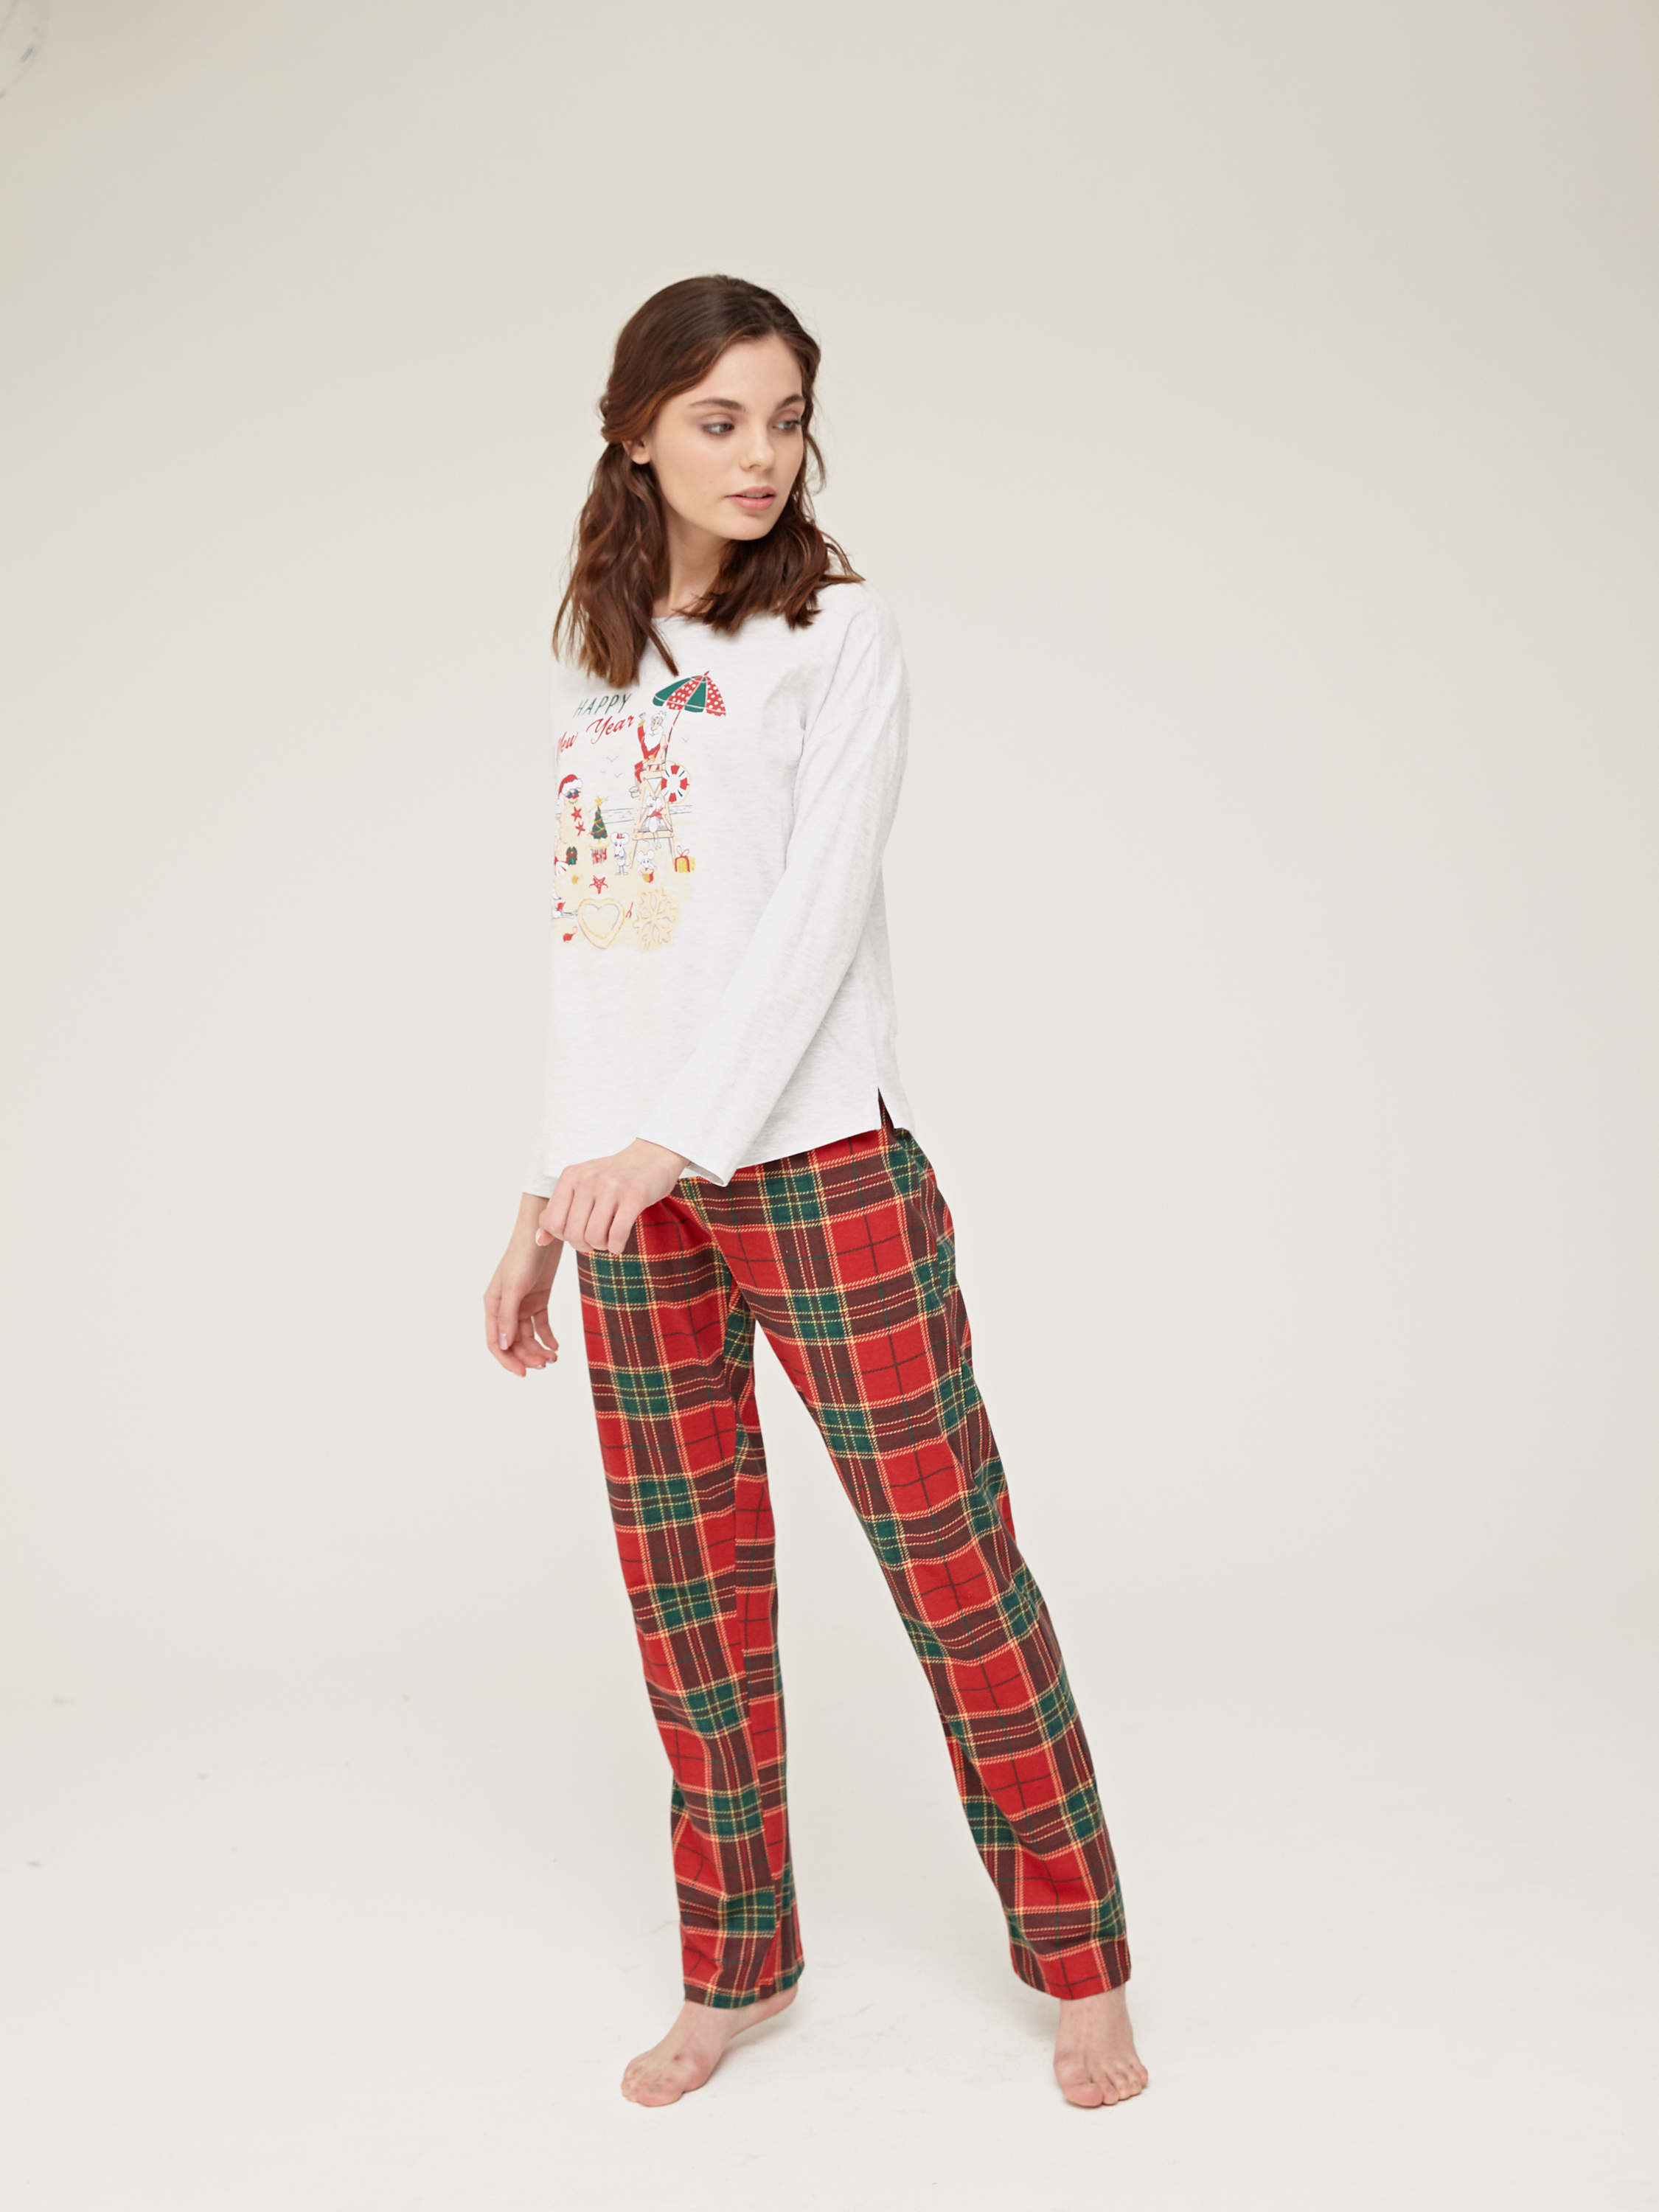 Купить Пижаму Женскую В Интернет Магазине